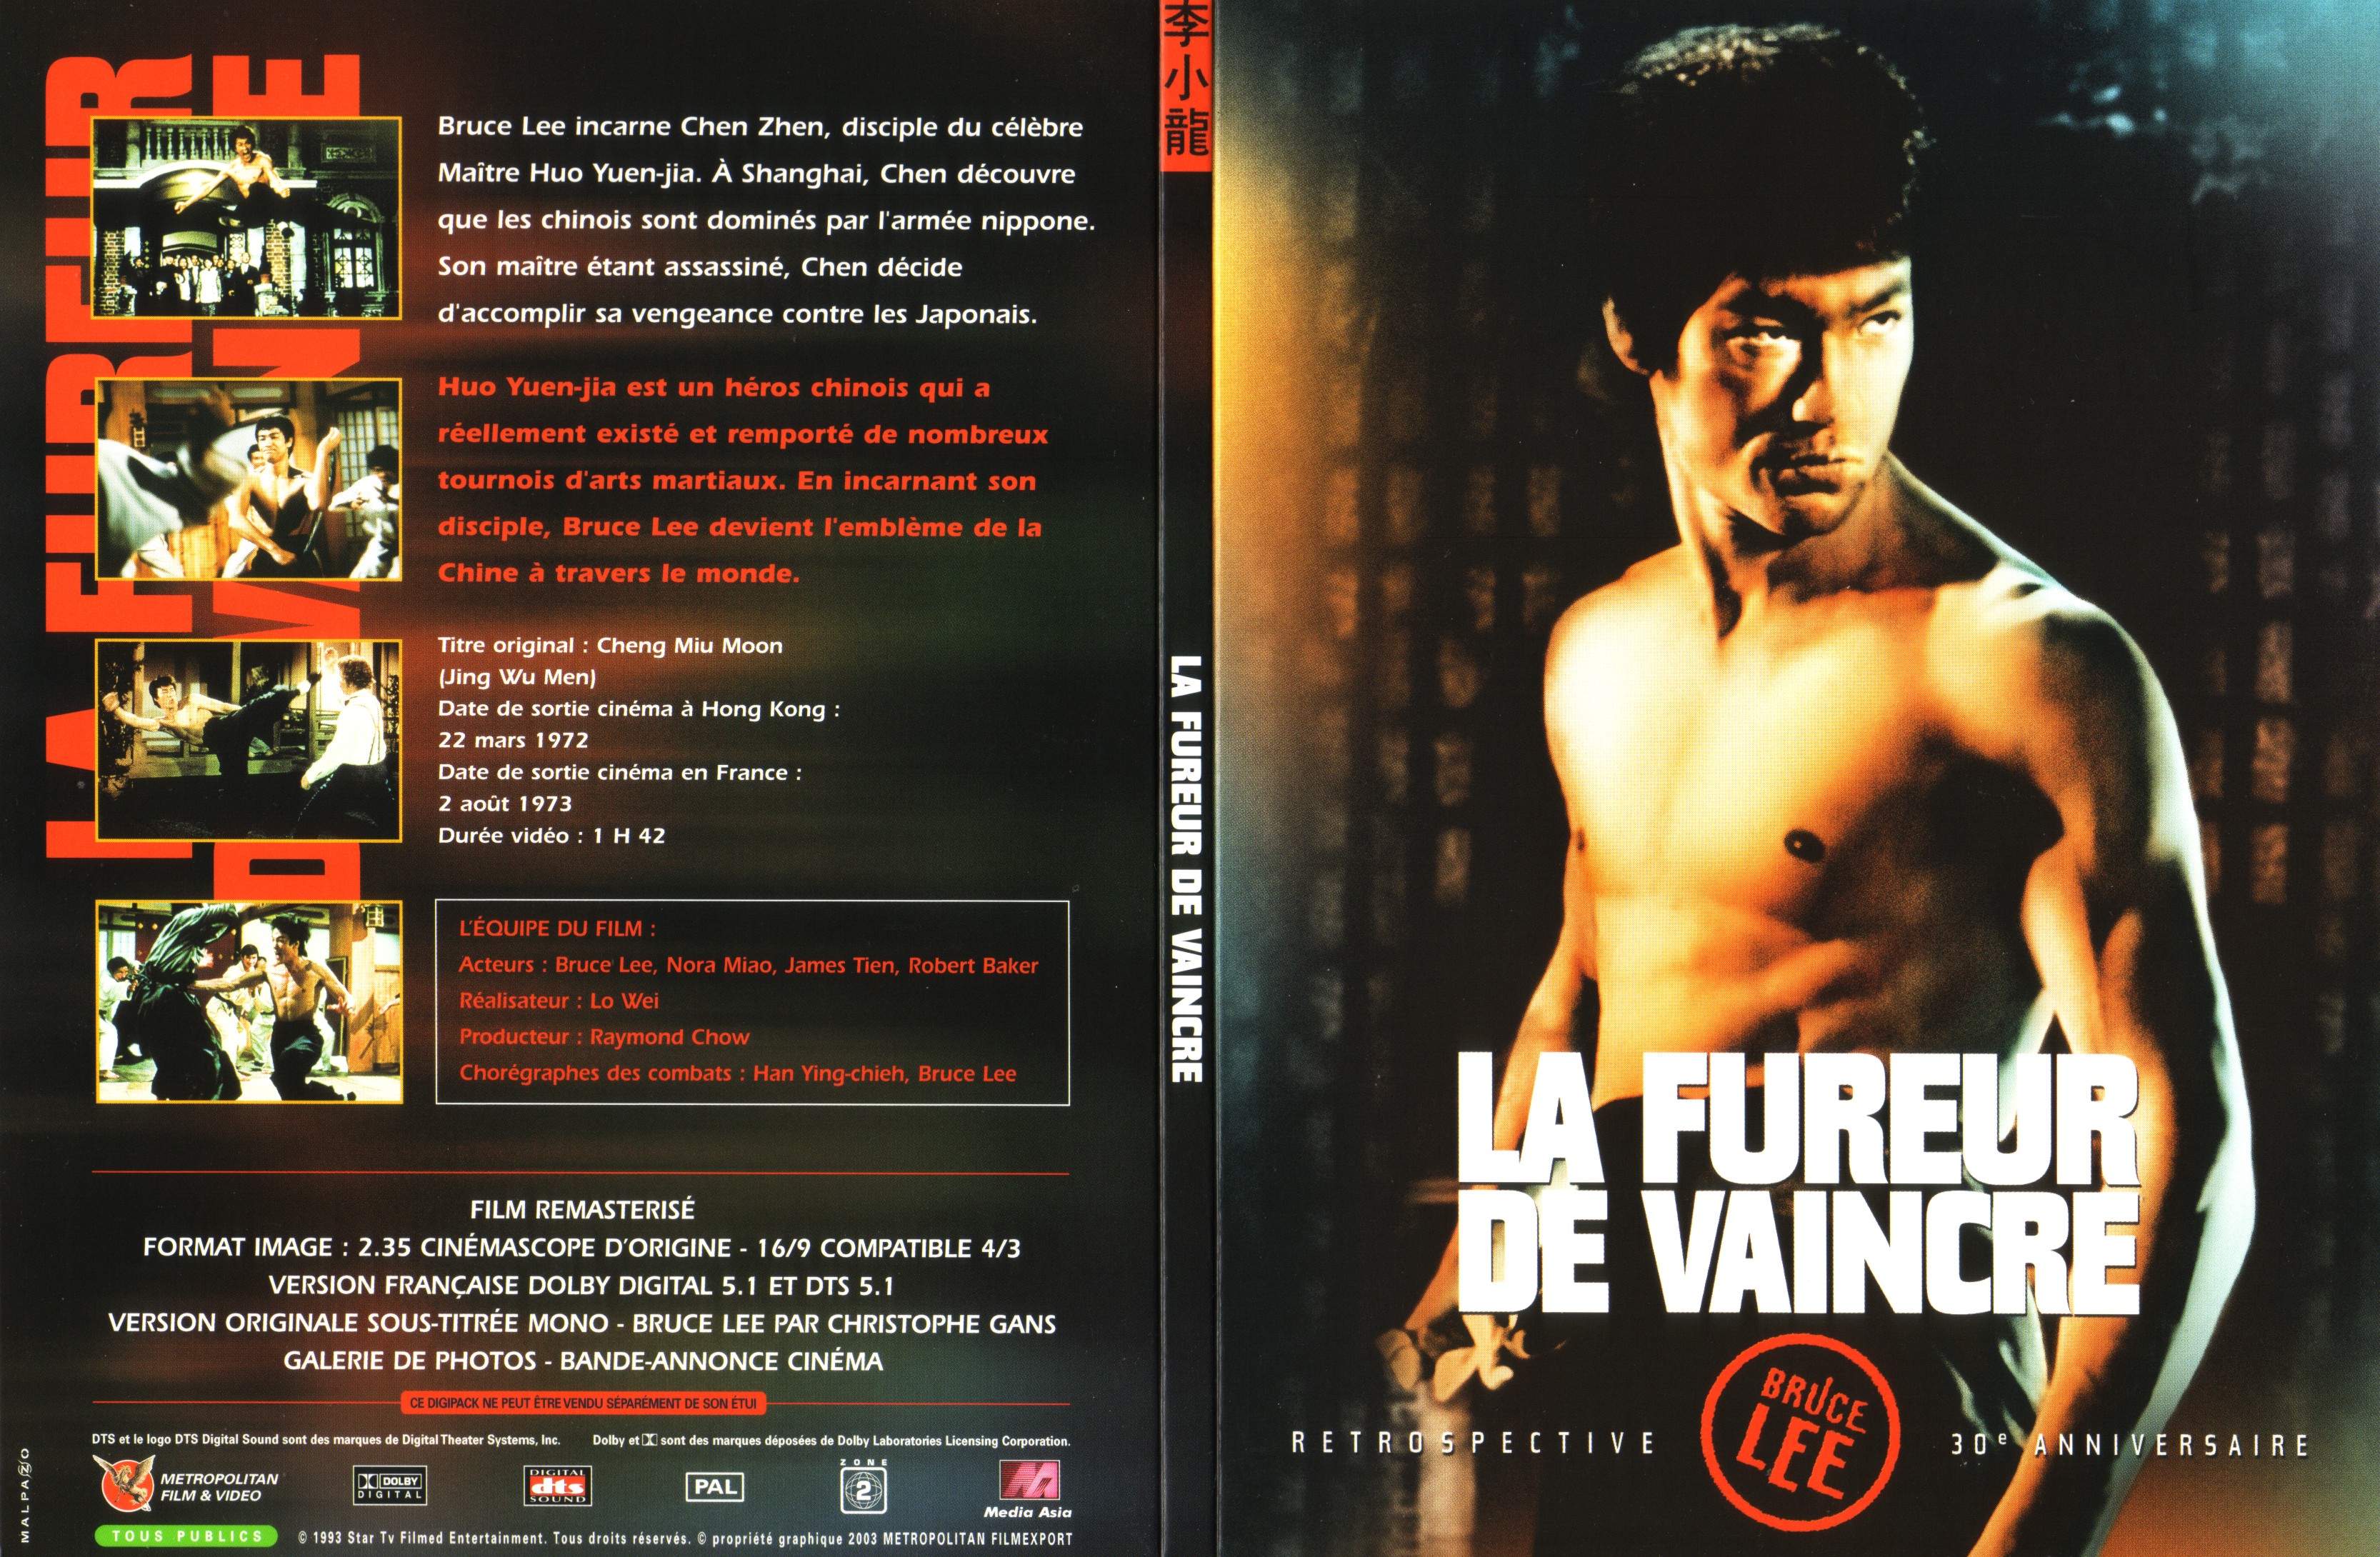 Jaquette DVD La fureur de vaincre v2